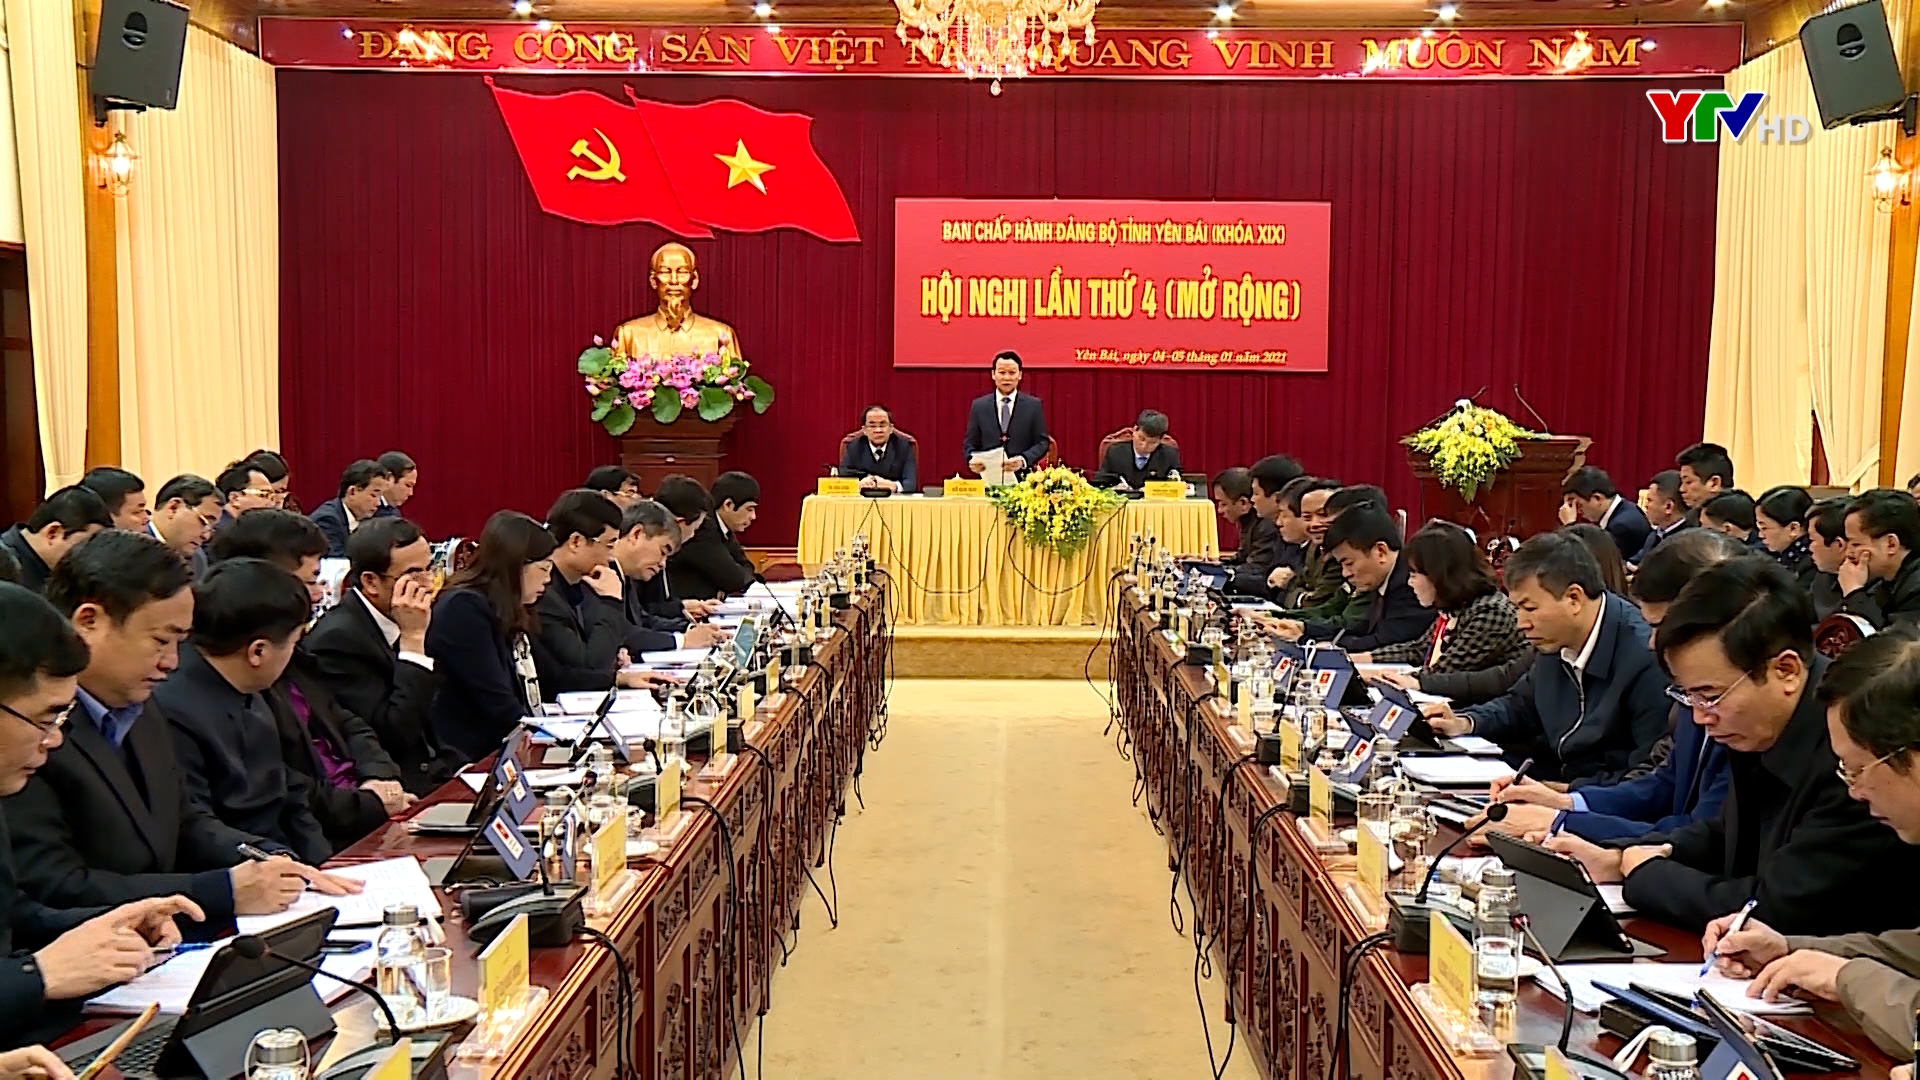 Hội nghị Ban Chấp hành Đảng bộ tỉnh Yên Bái lần thứ 4 (mở rộng) thông qua 5 Nghị quyết quan trọng